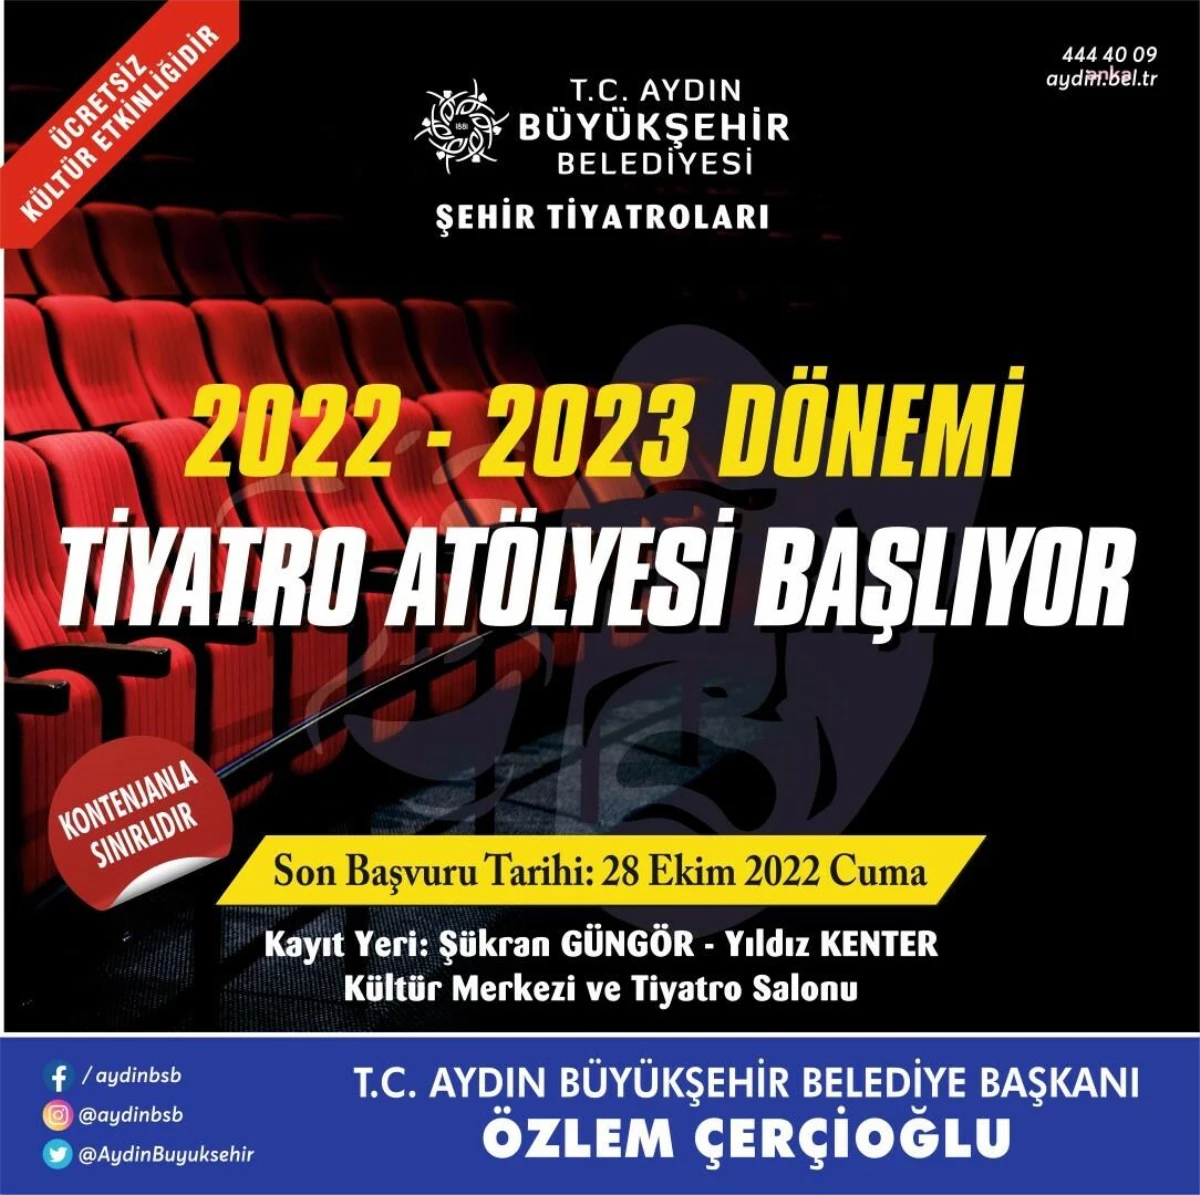 Aydın haber: Aydın Büyükşehir Belediyesi\'nin Tiyatro Atölyeleri Başlıyor